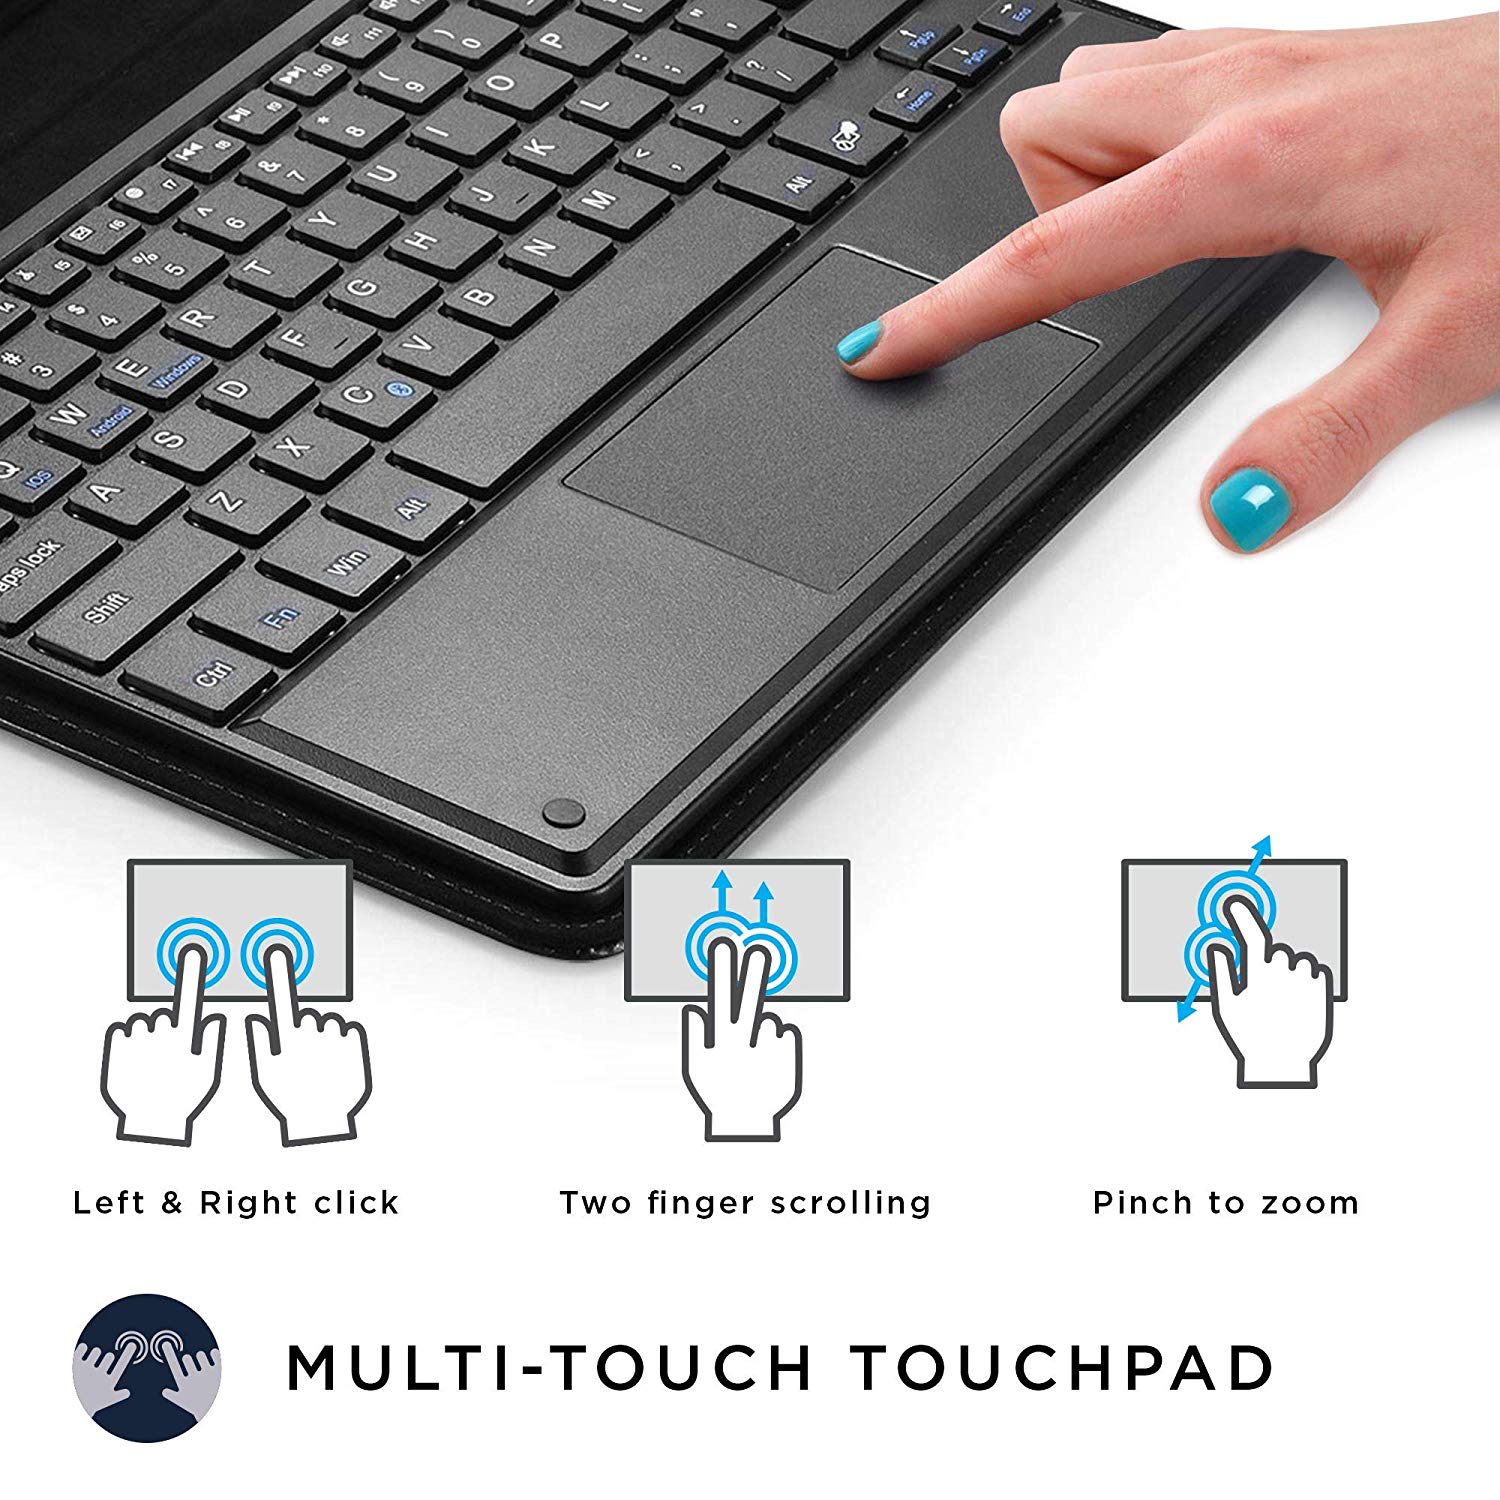 Touchpad được coi như “chuột máy tính” tích hợp trực tiếp trên laptop